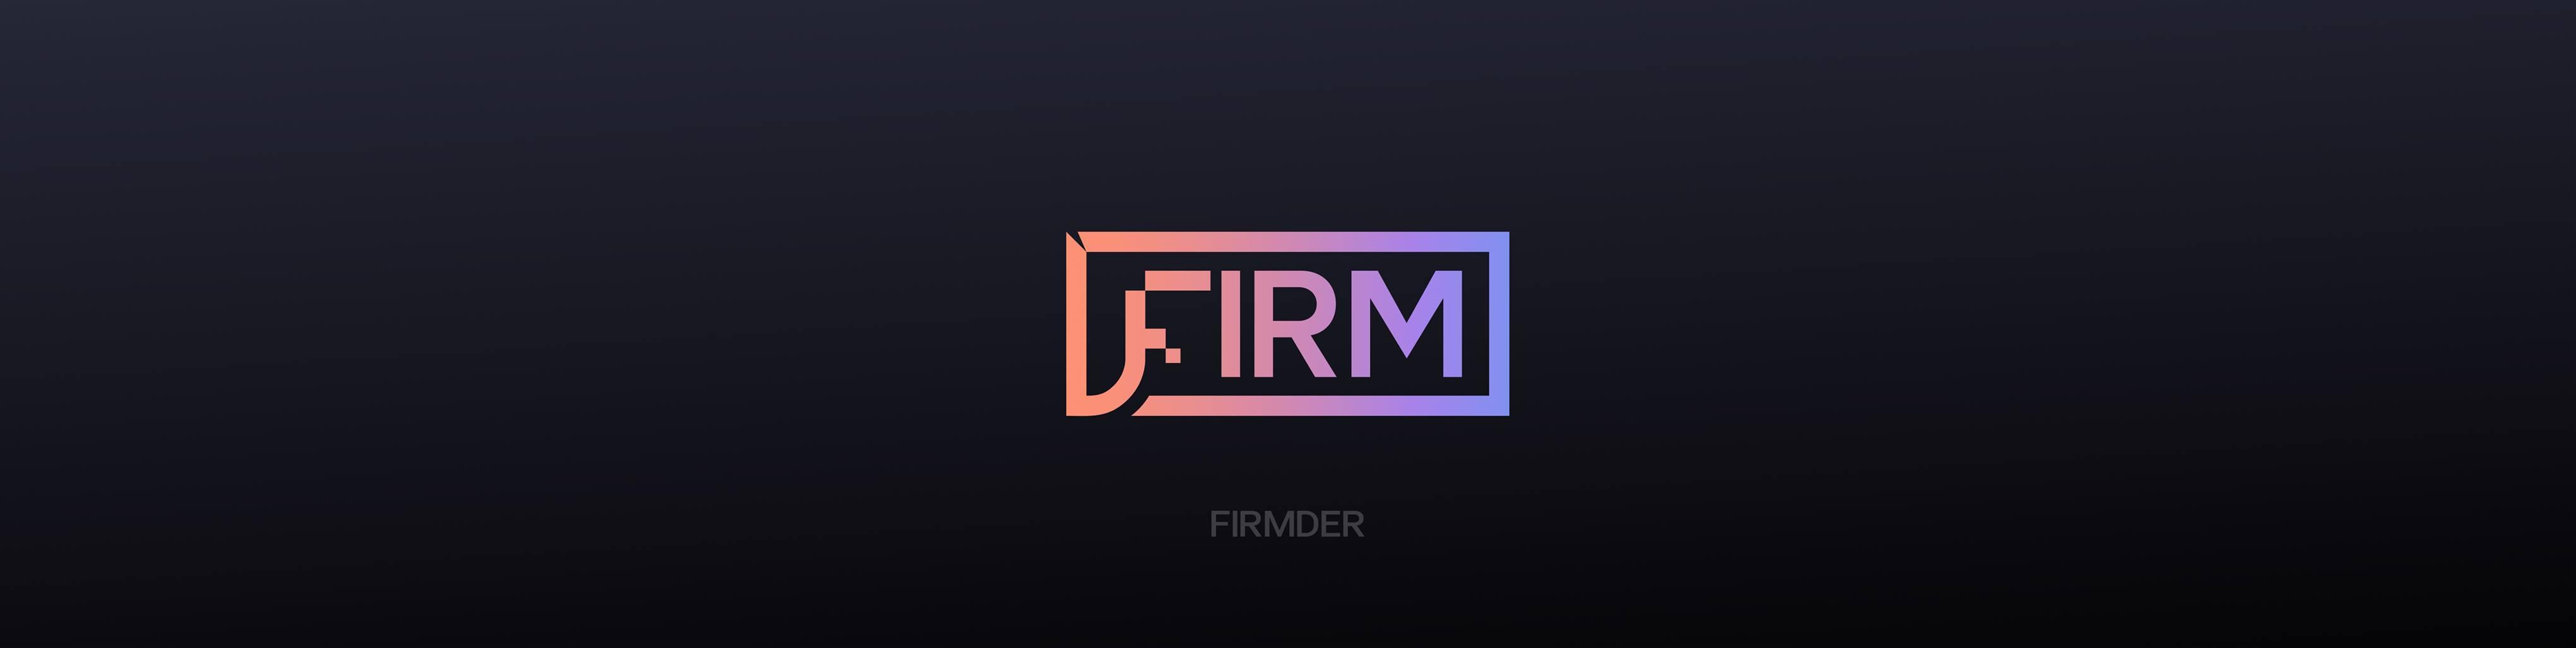 FIRMDER / startup von Berlin / Background